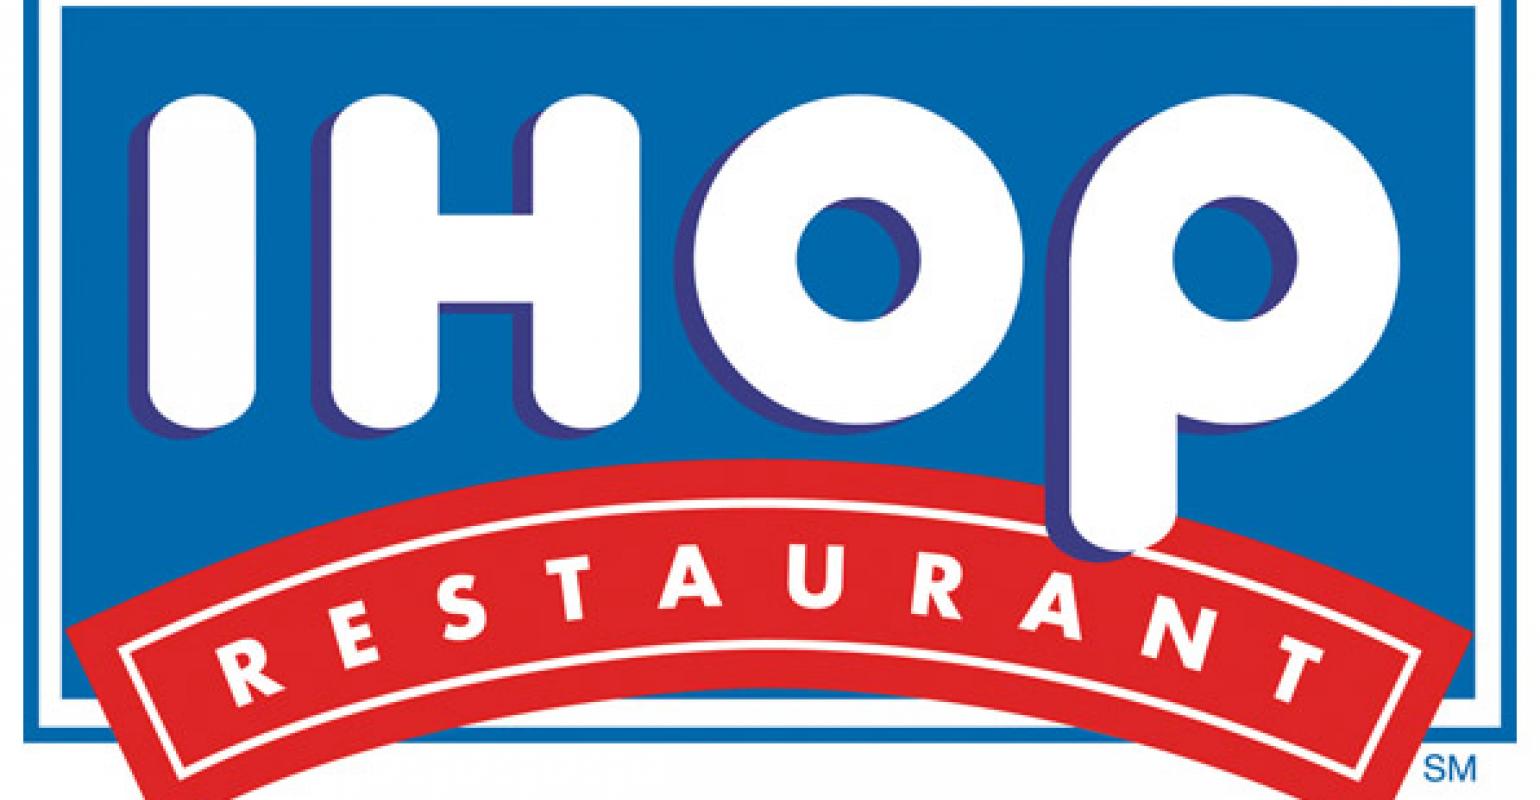 IHOP Boosted Sales With Menu